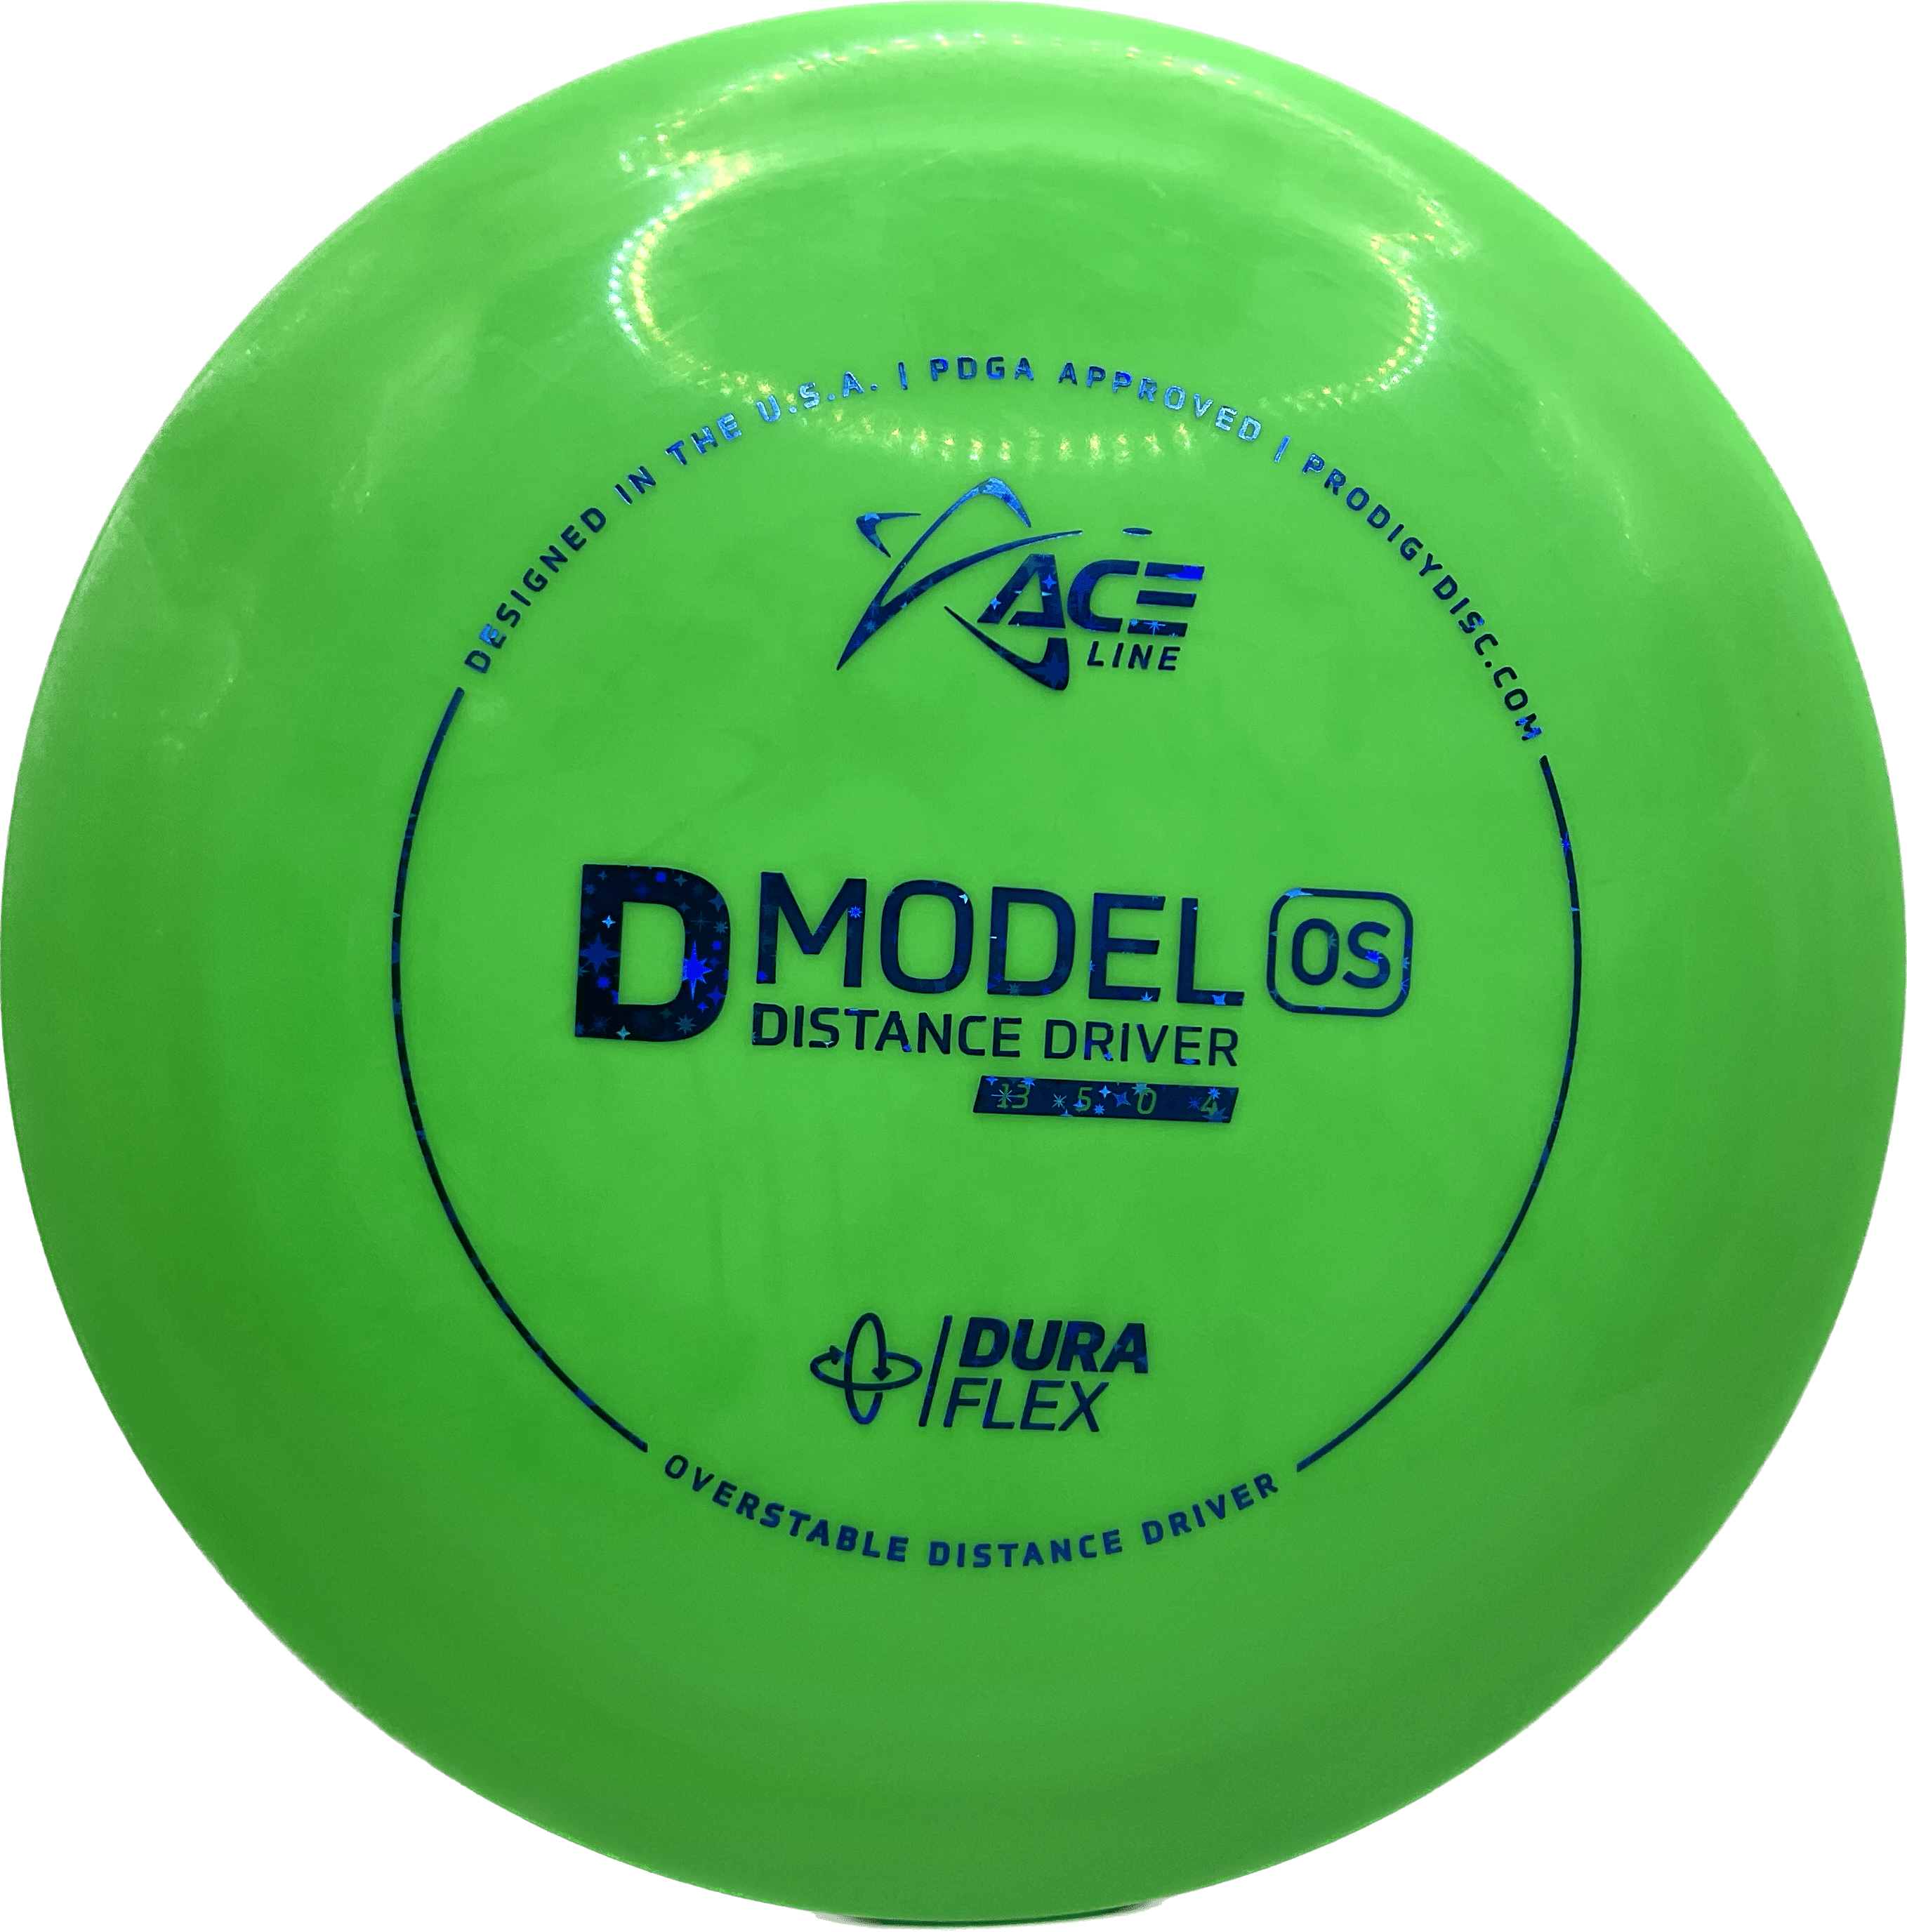 Overthrow Disc Golf Disc Prodigy D Model OS, DuraFlex, 170-175, Green, Blue Stars